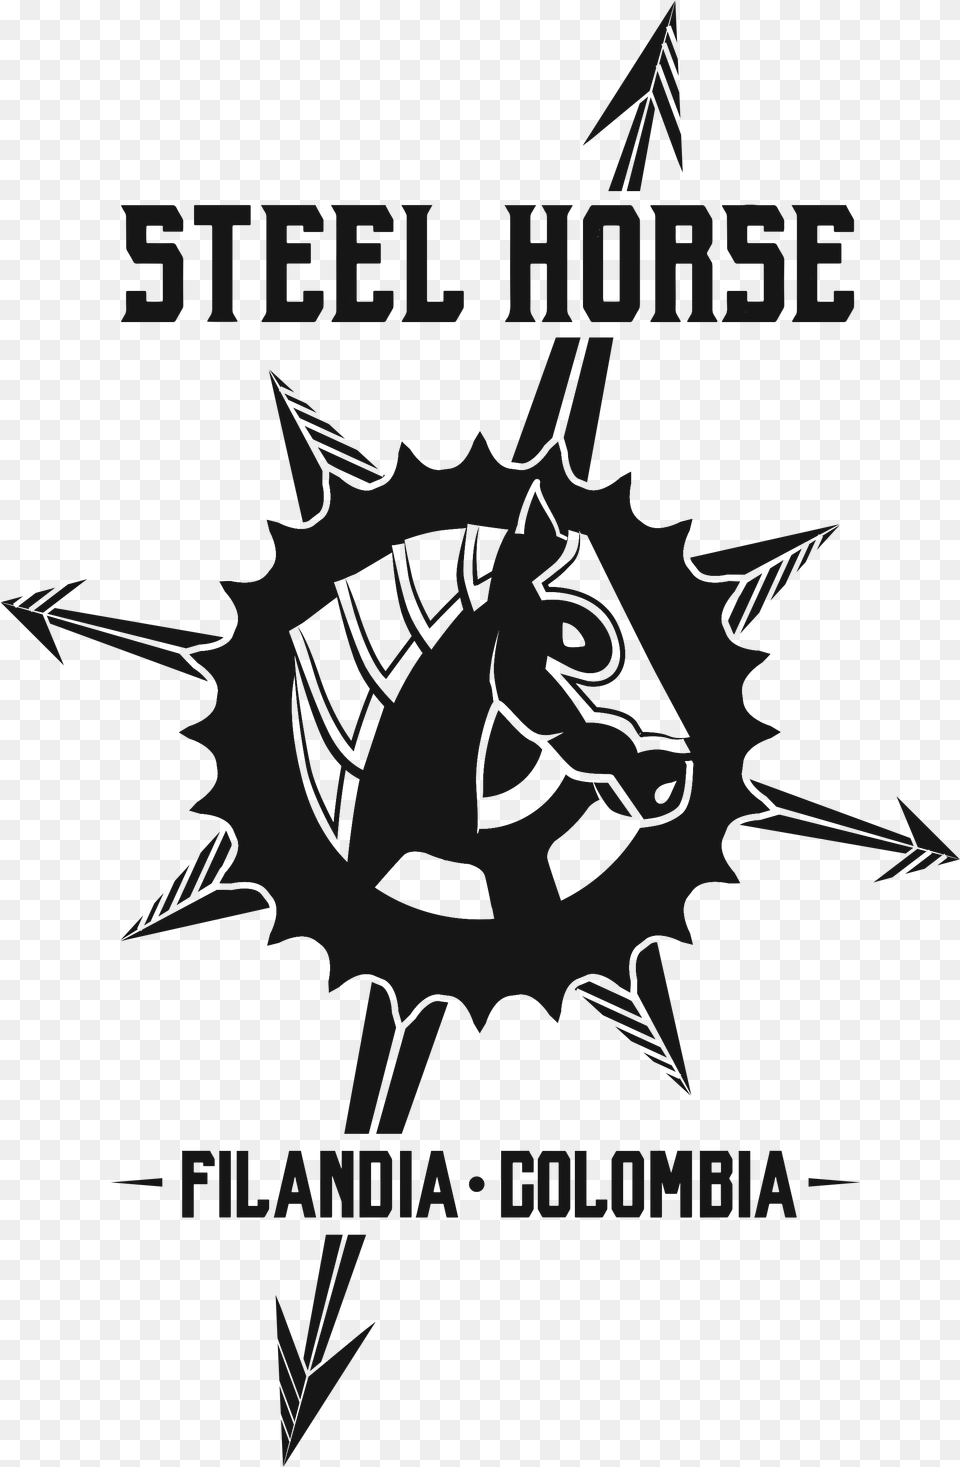 Steel Horse Colombia Illustration, Logo, Scoreboard Png